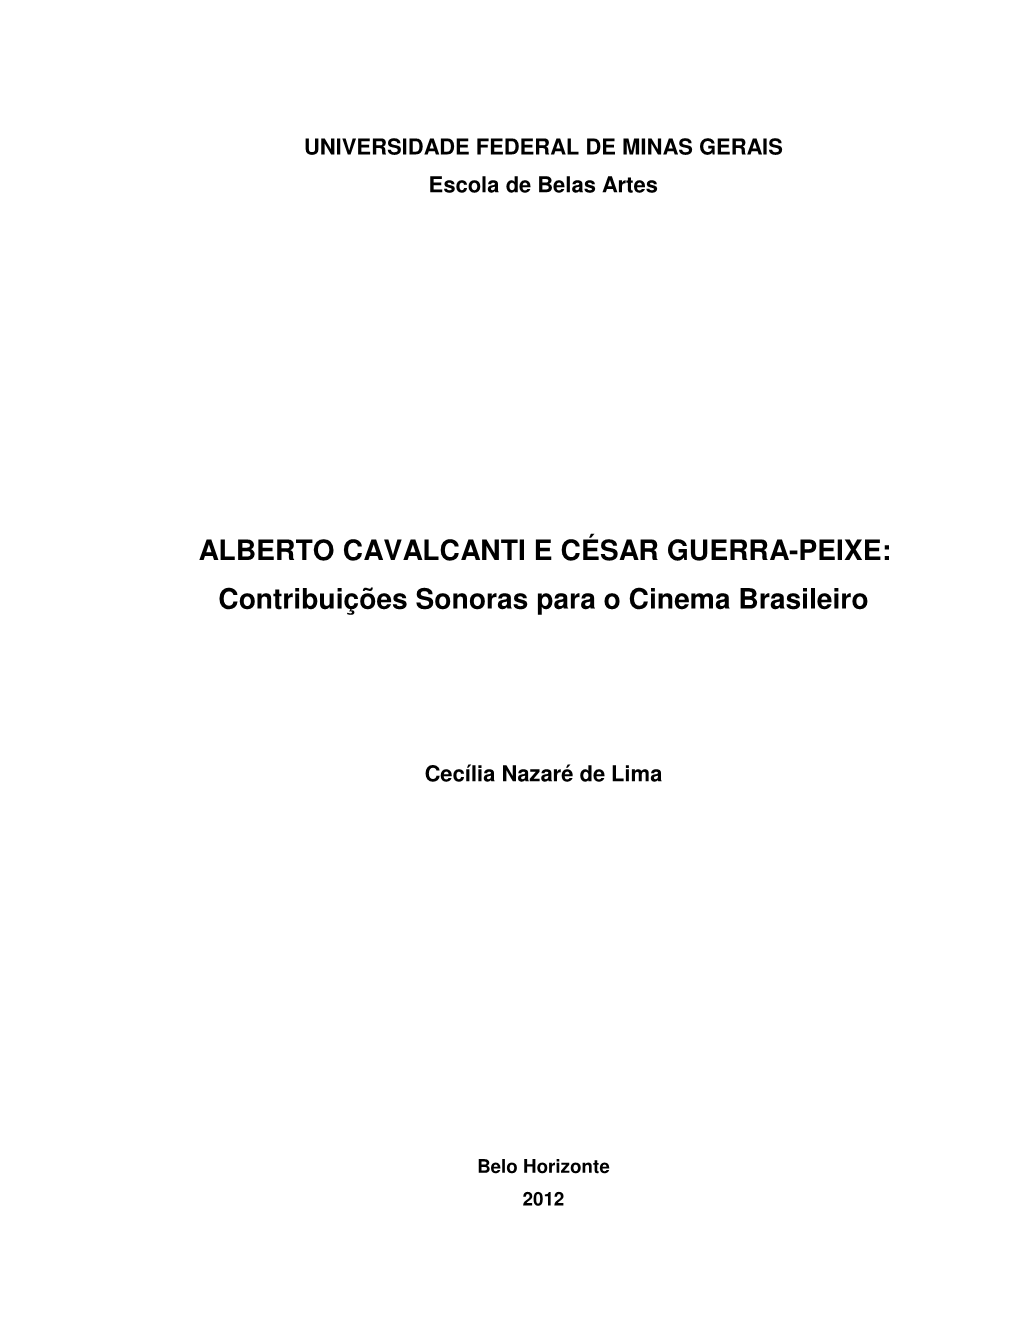 ALBERTO CAVALCANTI E CÉSAR GUERRA-PEIXE: Contribuições Sonoras Para O Cinema Brasileiro